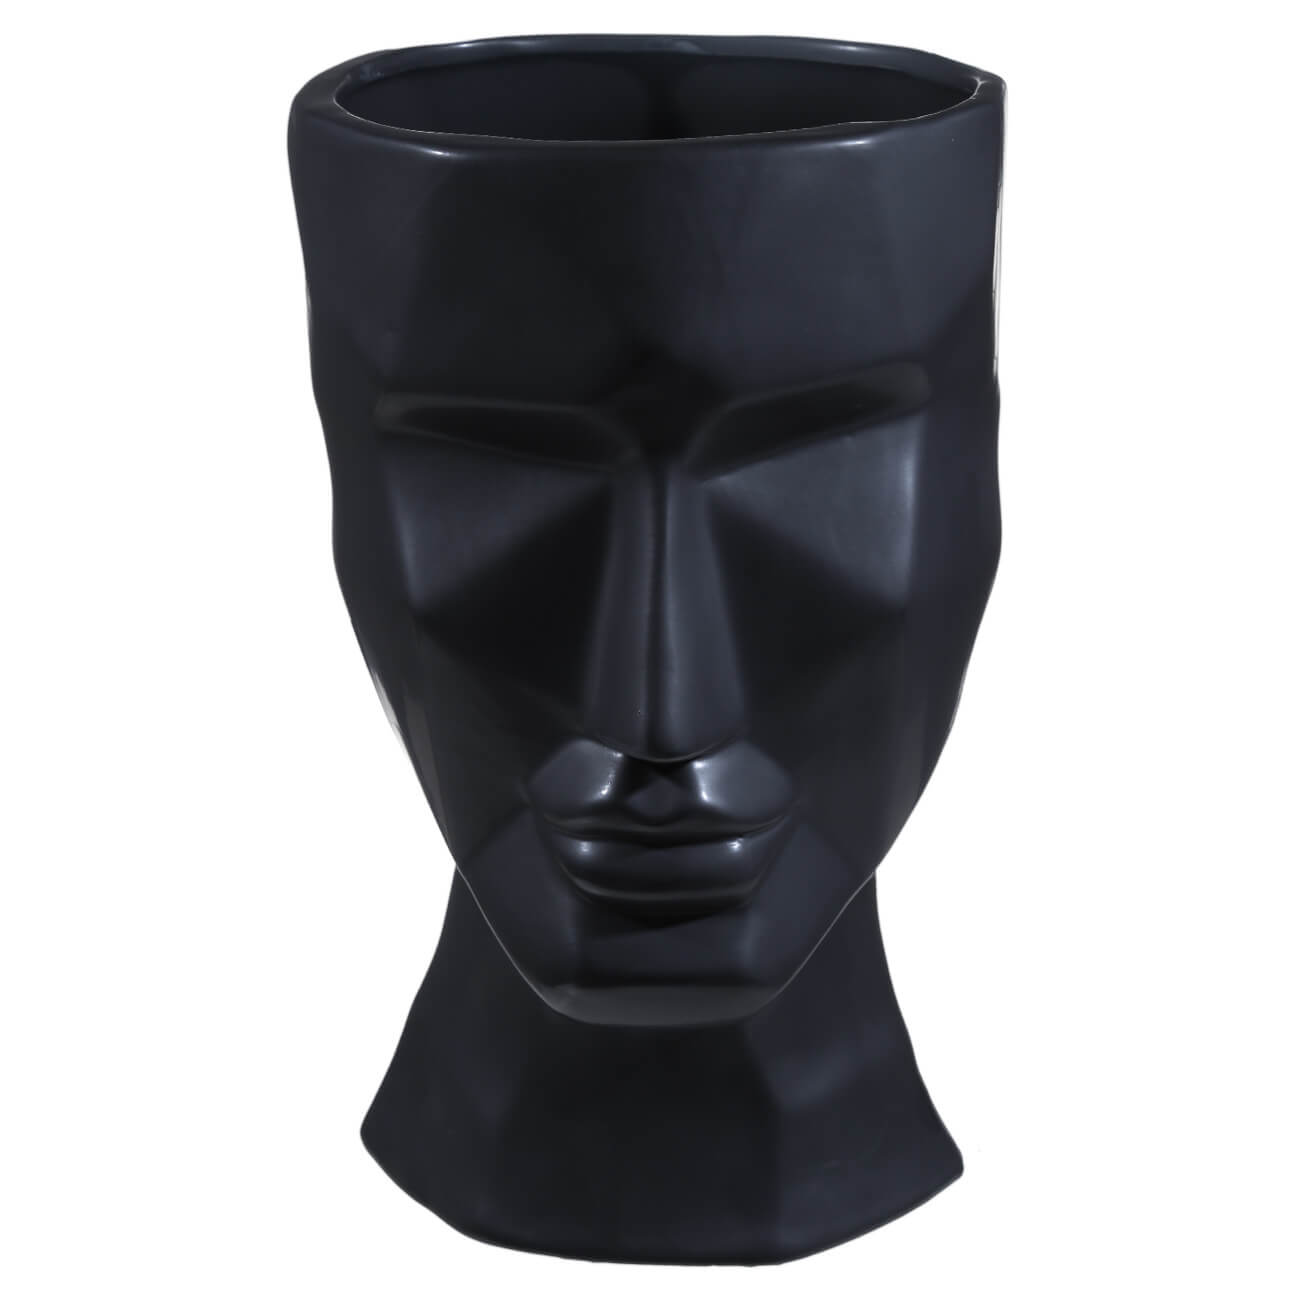 Ваза для цветов, 29 см, декоративная, керамика, черная, Графичное лицо, Face ваза для ов 29 см декоративная керамика черная графичное лицо face